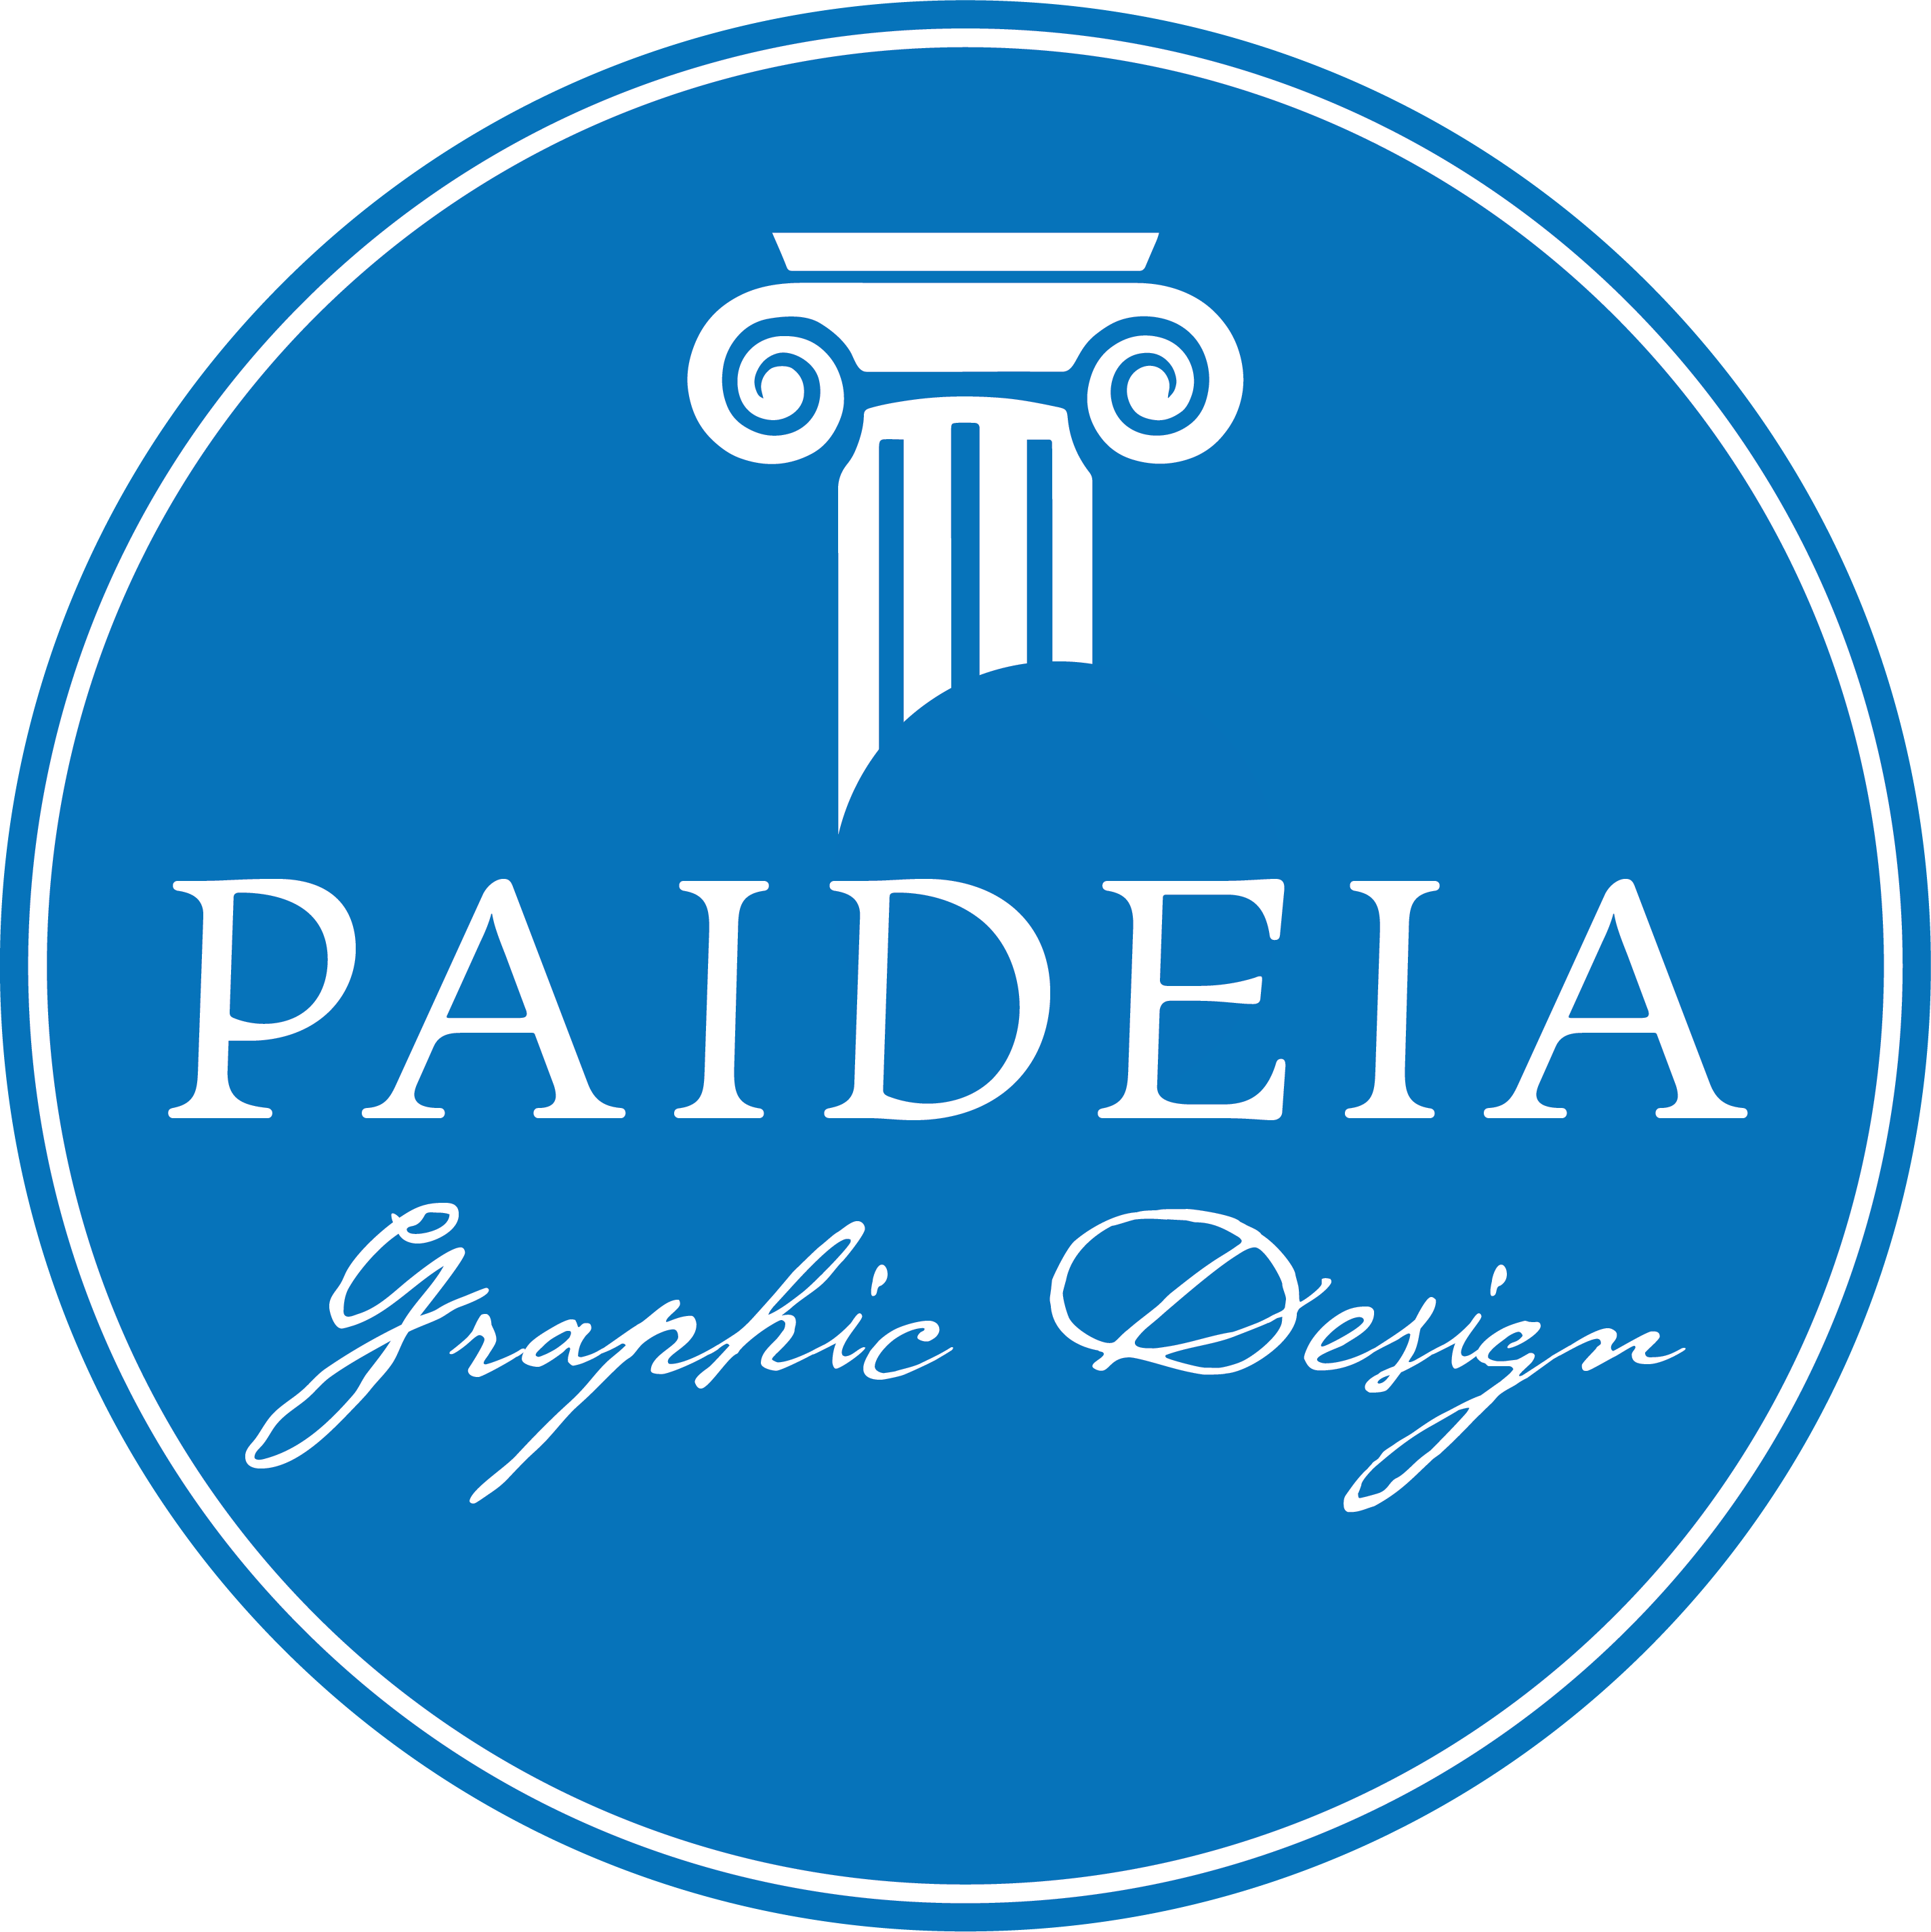 Paideia Graphic Design